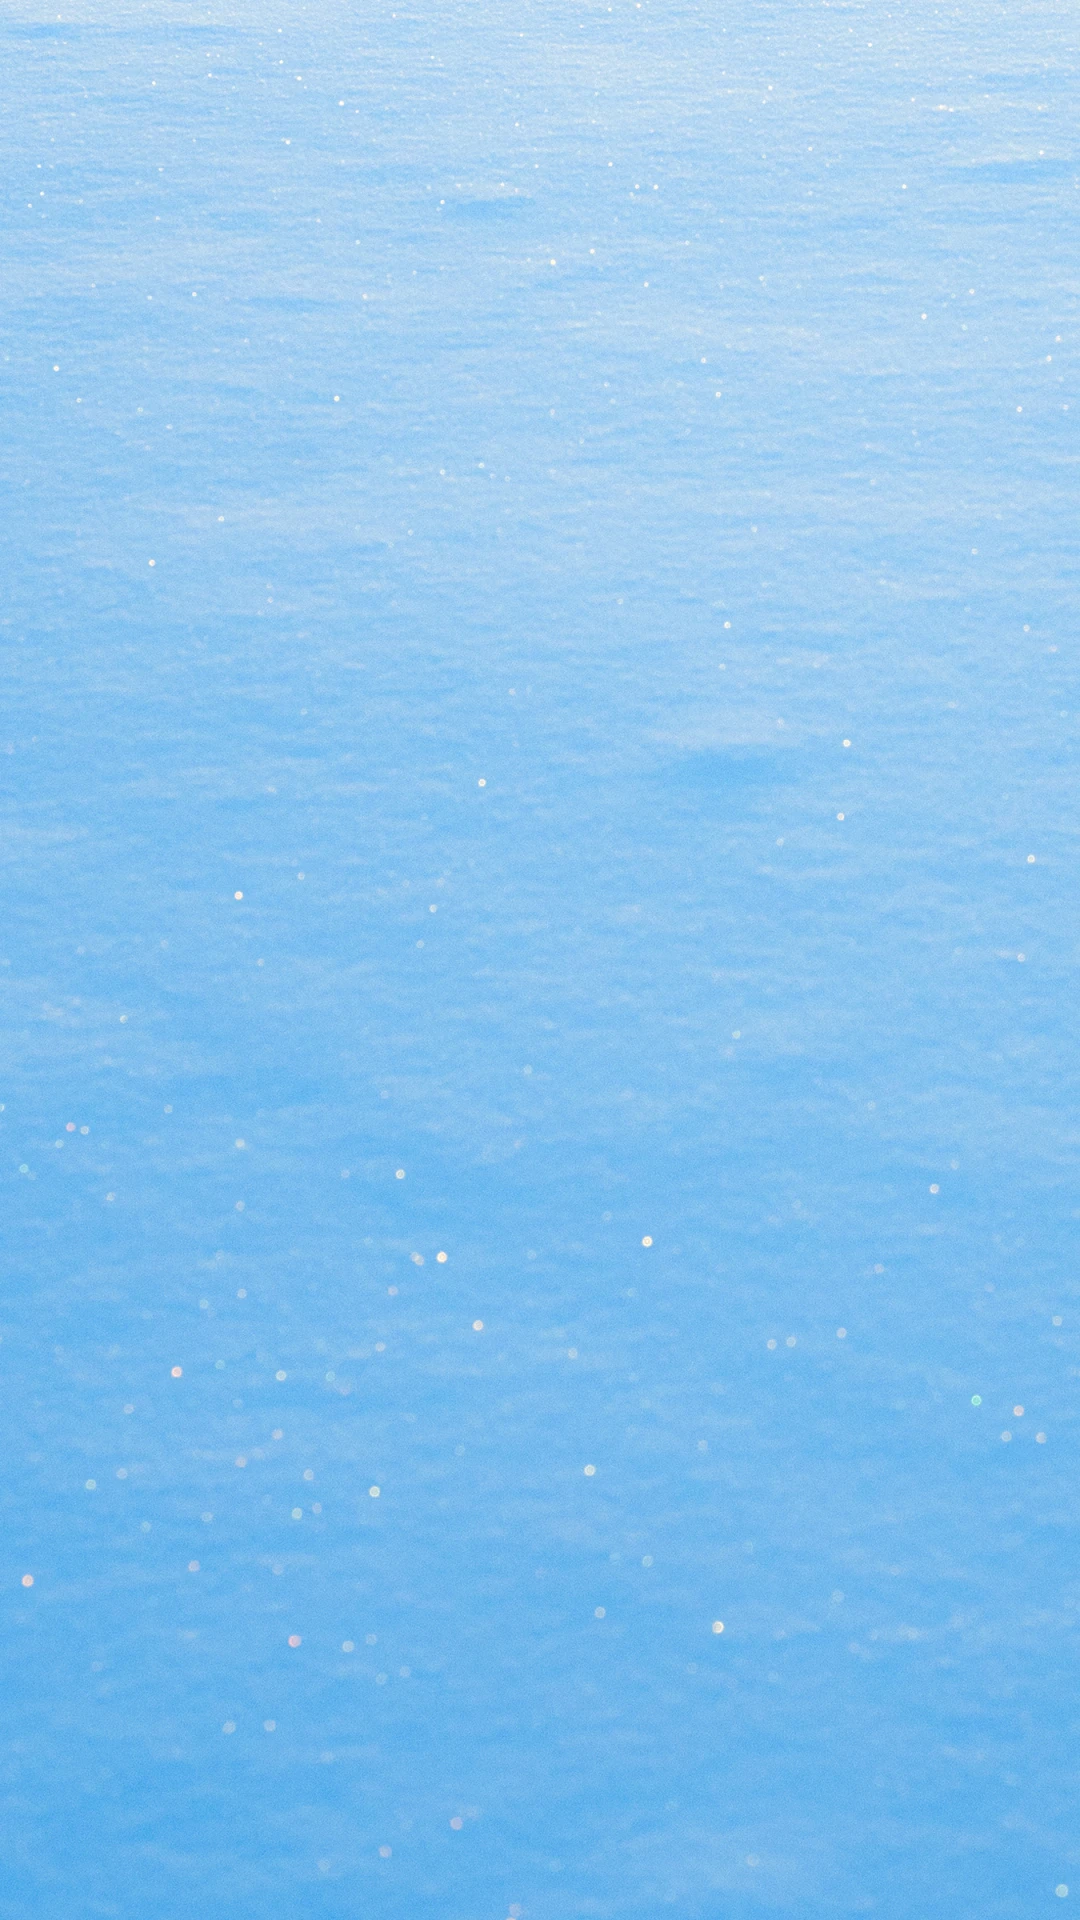 沁润之色 夏日纯净海洋 创意风景 高清手机壁纸-PixStock 源像素